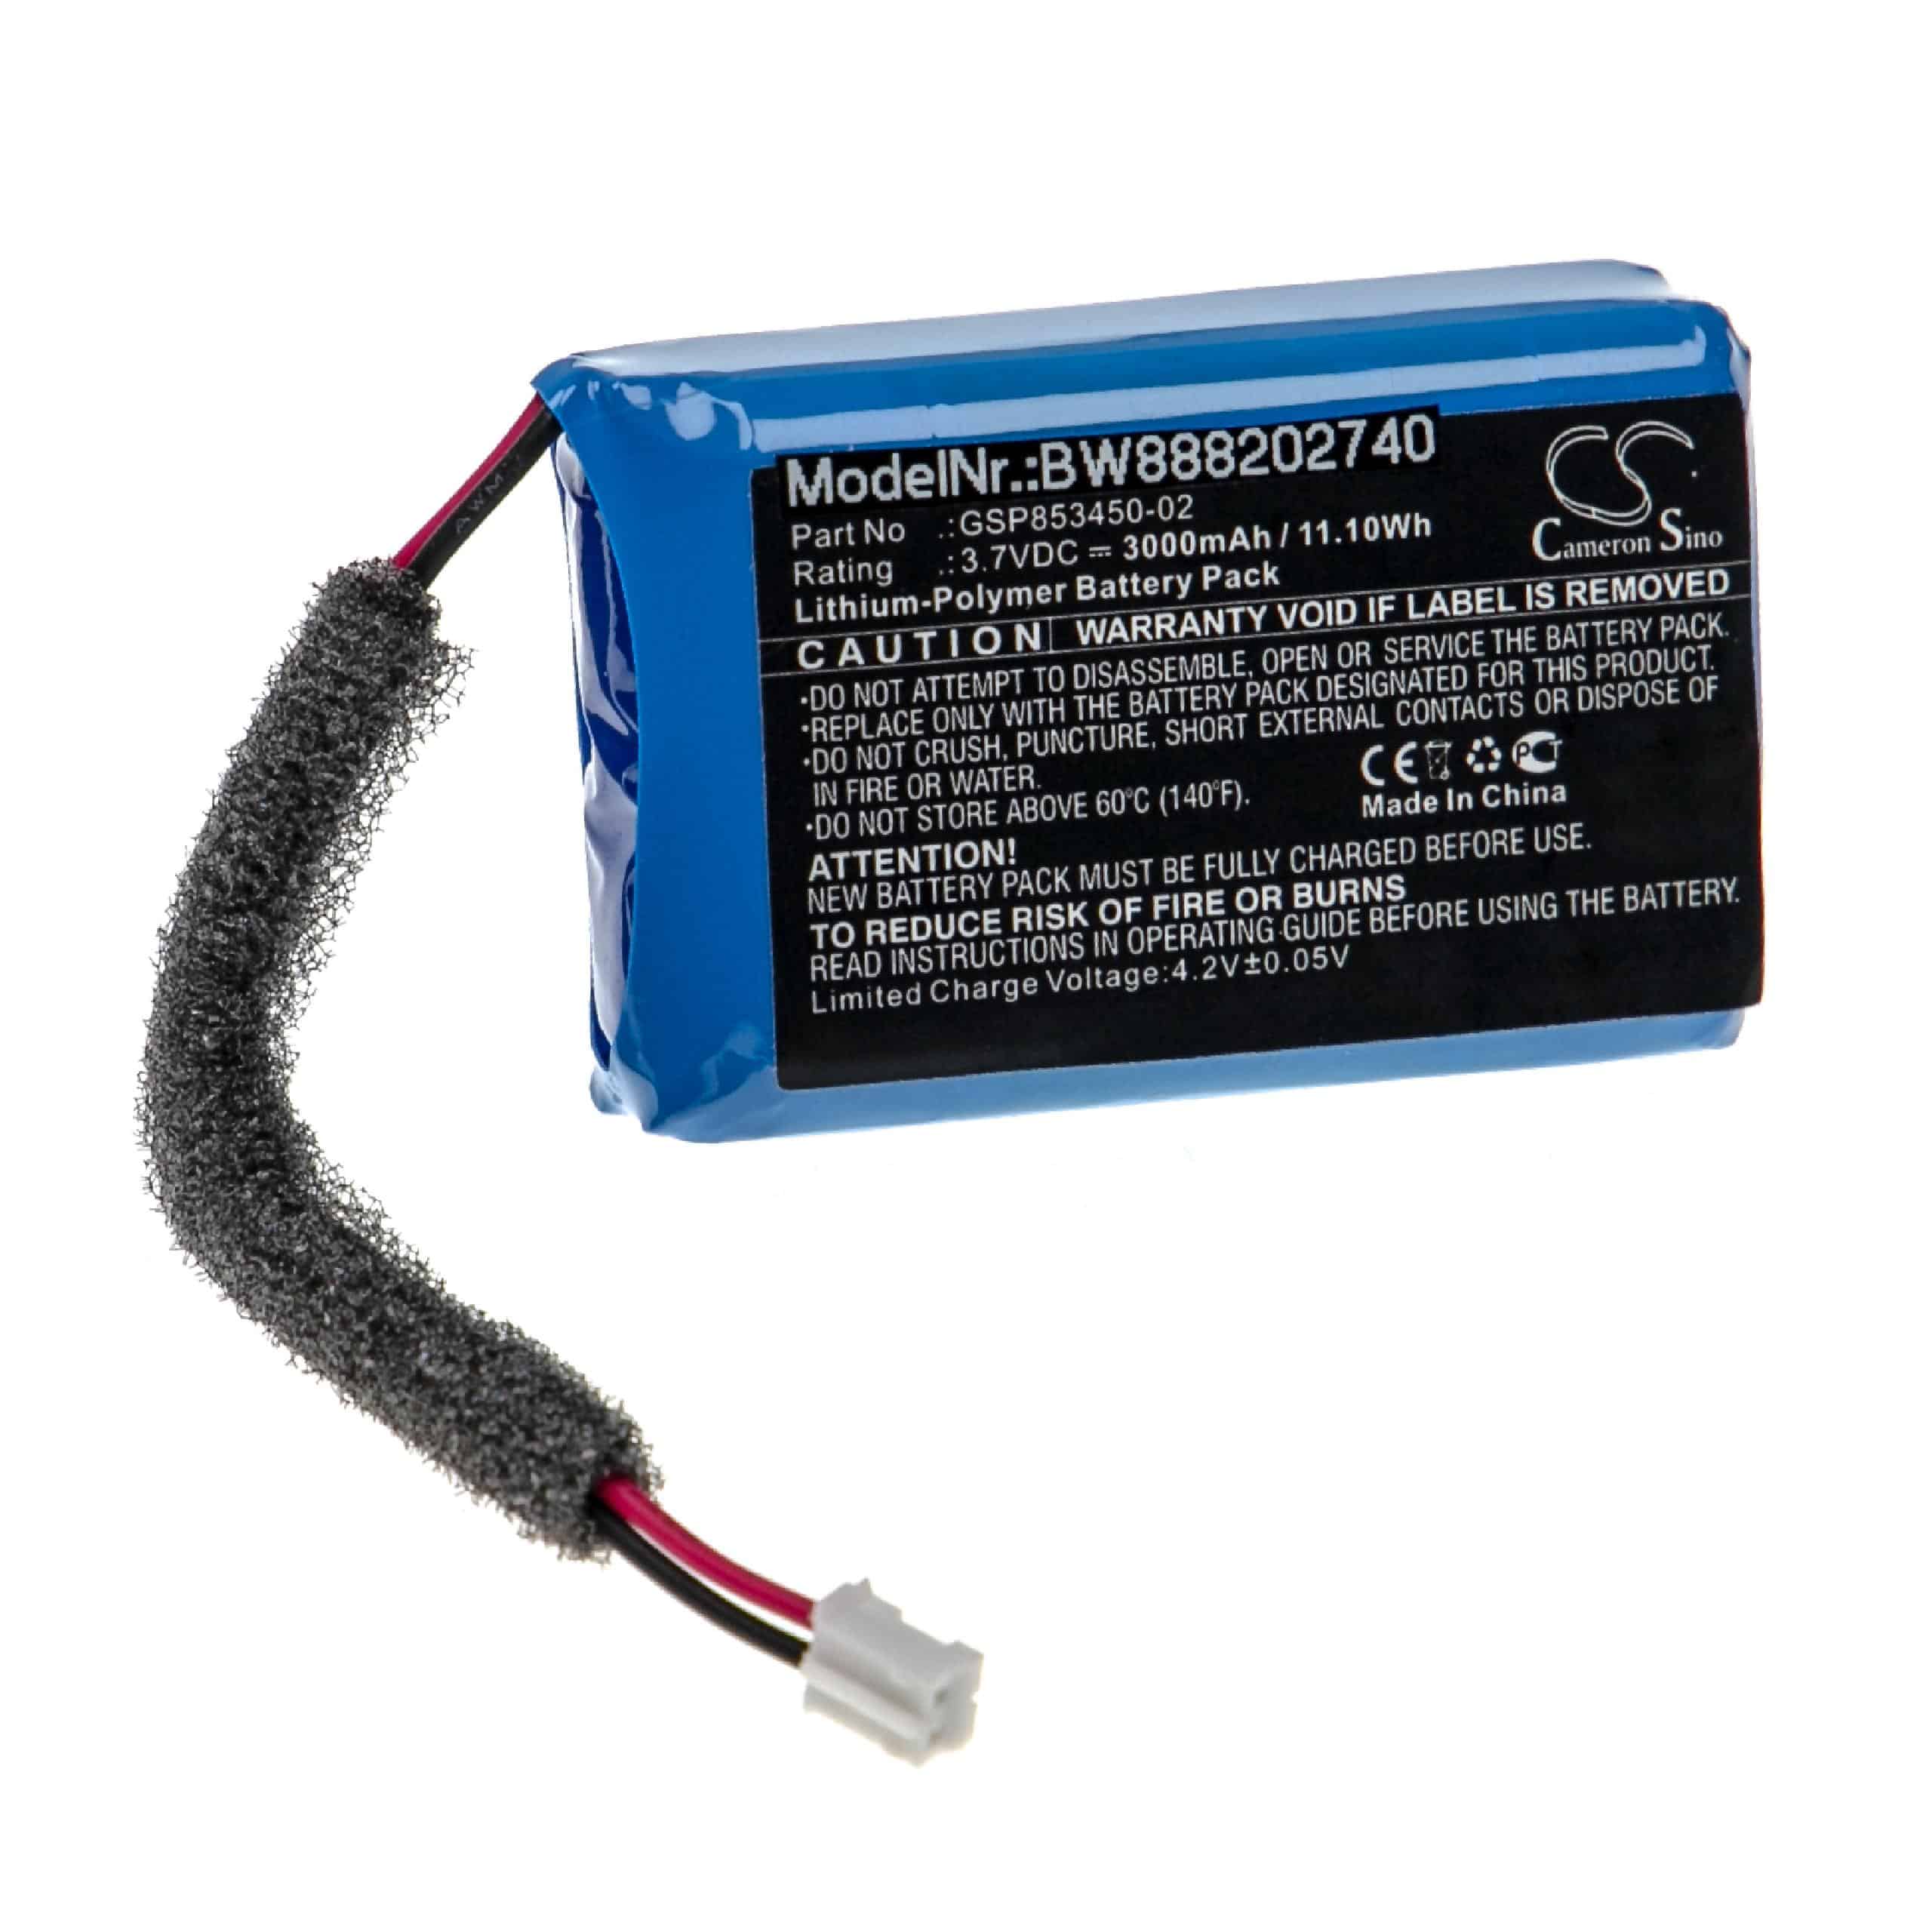 Akumulator do głośnika JBL zamiennik JBL GSP853450-02 - LiPo 3000mAh